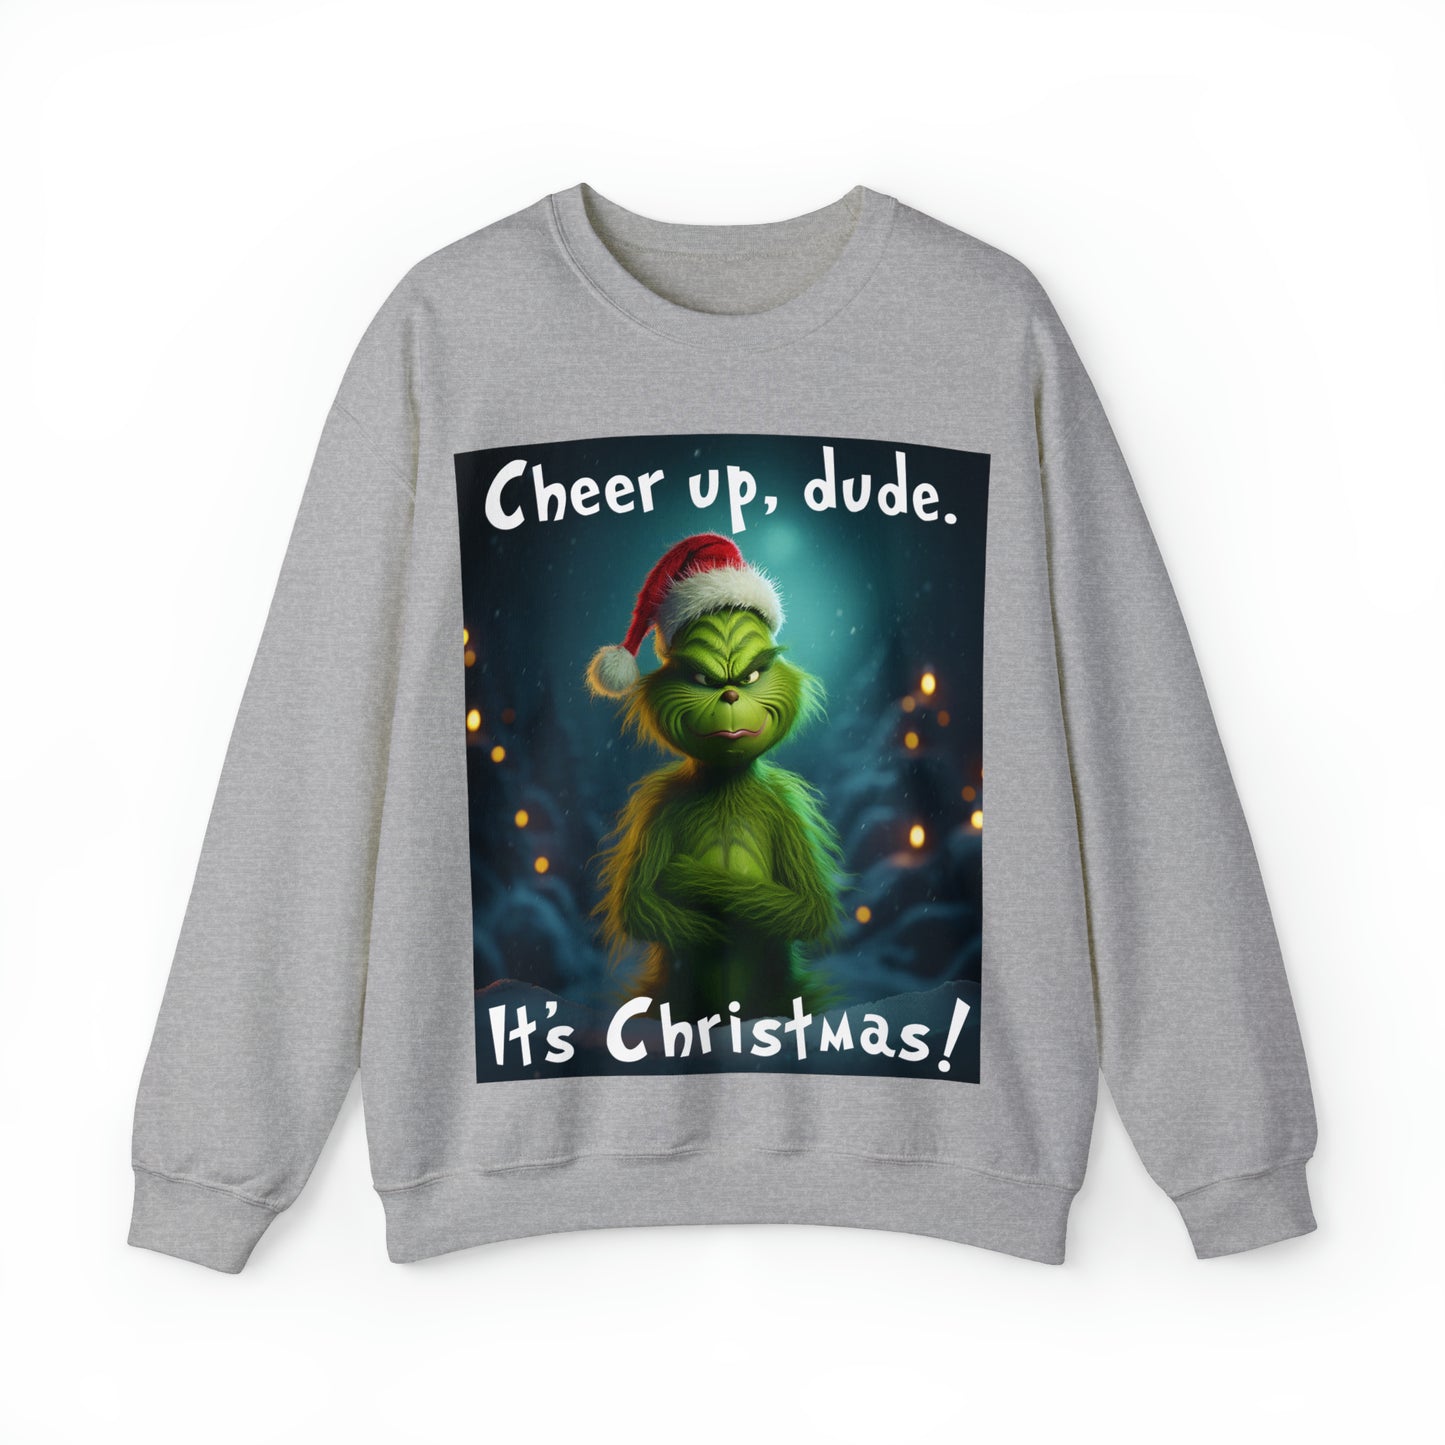 Grinch Sweatshirt Cheer Up Dude It's Christmas Unisex Men's Women's Sweatshirts